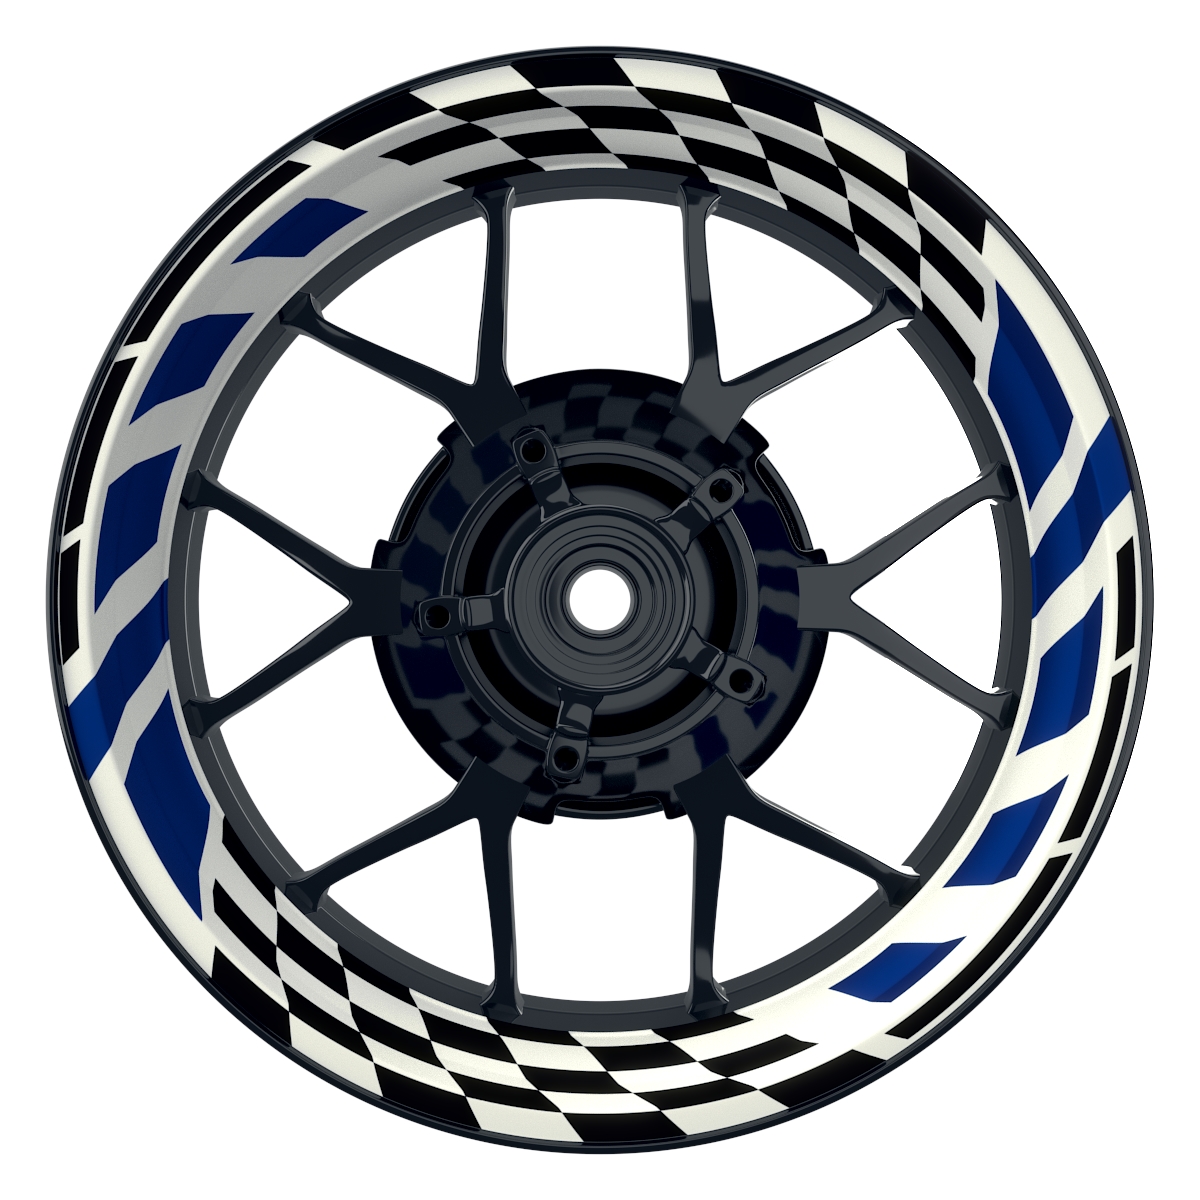 RACE weiss blau Wheelsticker Felgenaufkleber